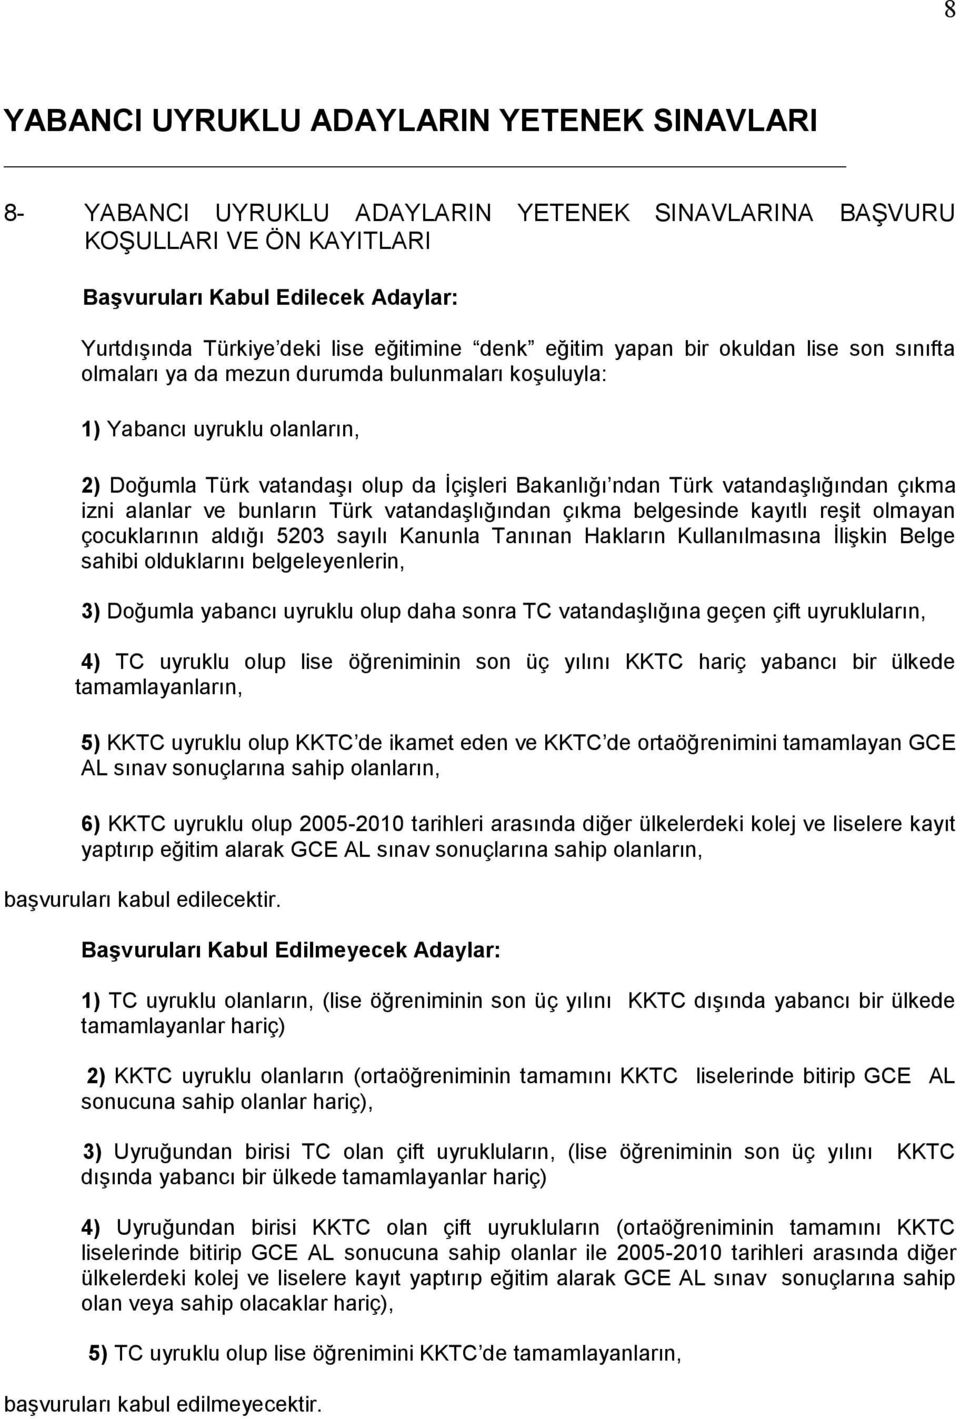 Türk vatandaşlığından çıkma izni alanlar ve bunların Türk vatandaşlığından çıkma belgesinde kayıtlı reşit olmayan çocuklarının aldığı 5203 sayılı Kanunla Tanınan Hakların Kullanılmasına İlişkin Belge